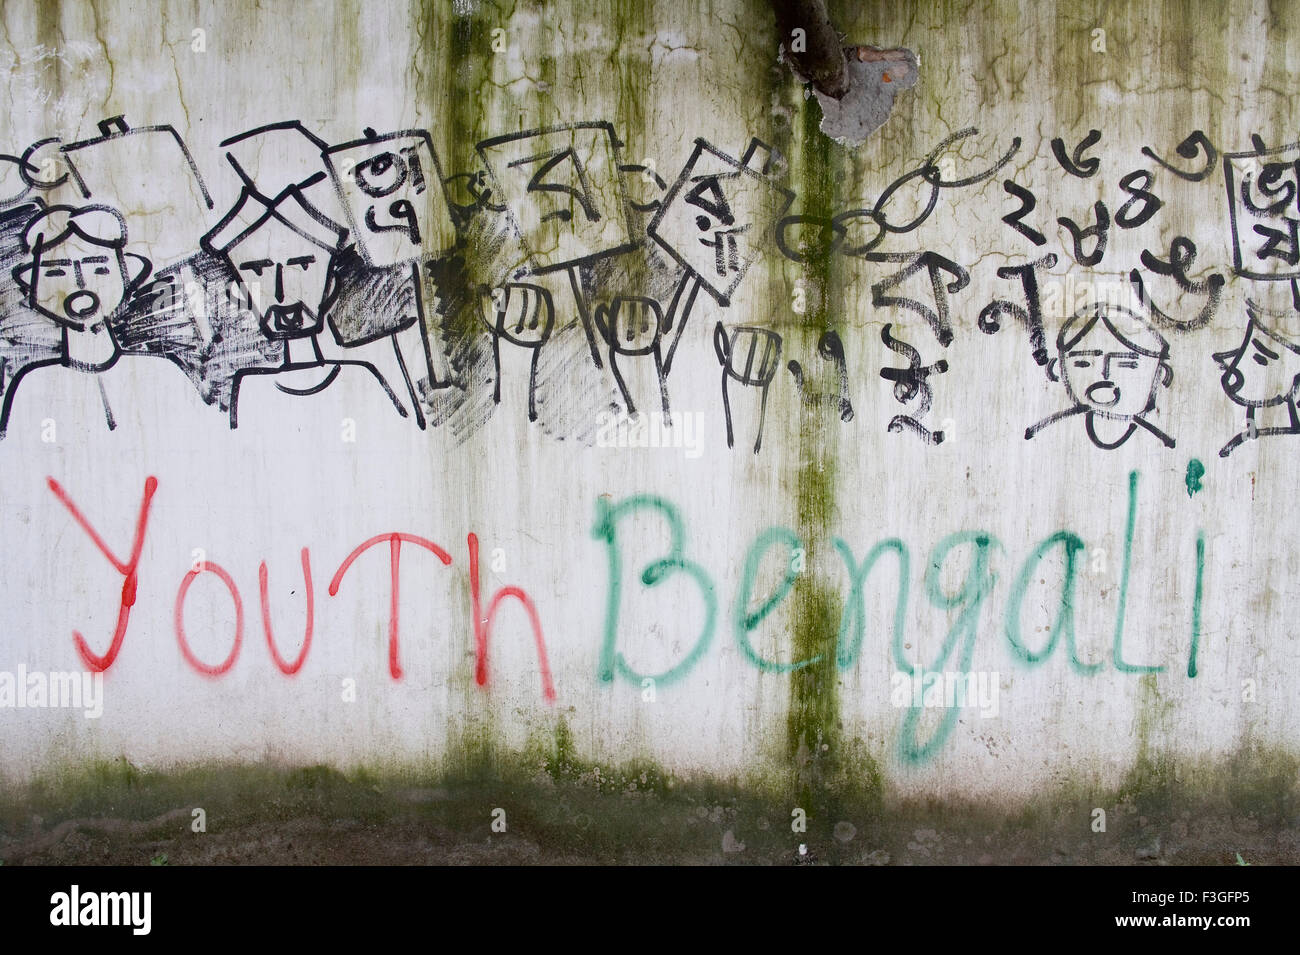 La juventud bengalí" escrita en la pared con dibujos de manifestación política ; ; Dhaka Bangladesh Foto de stock